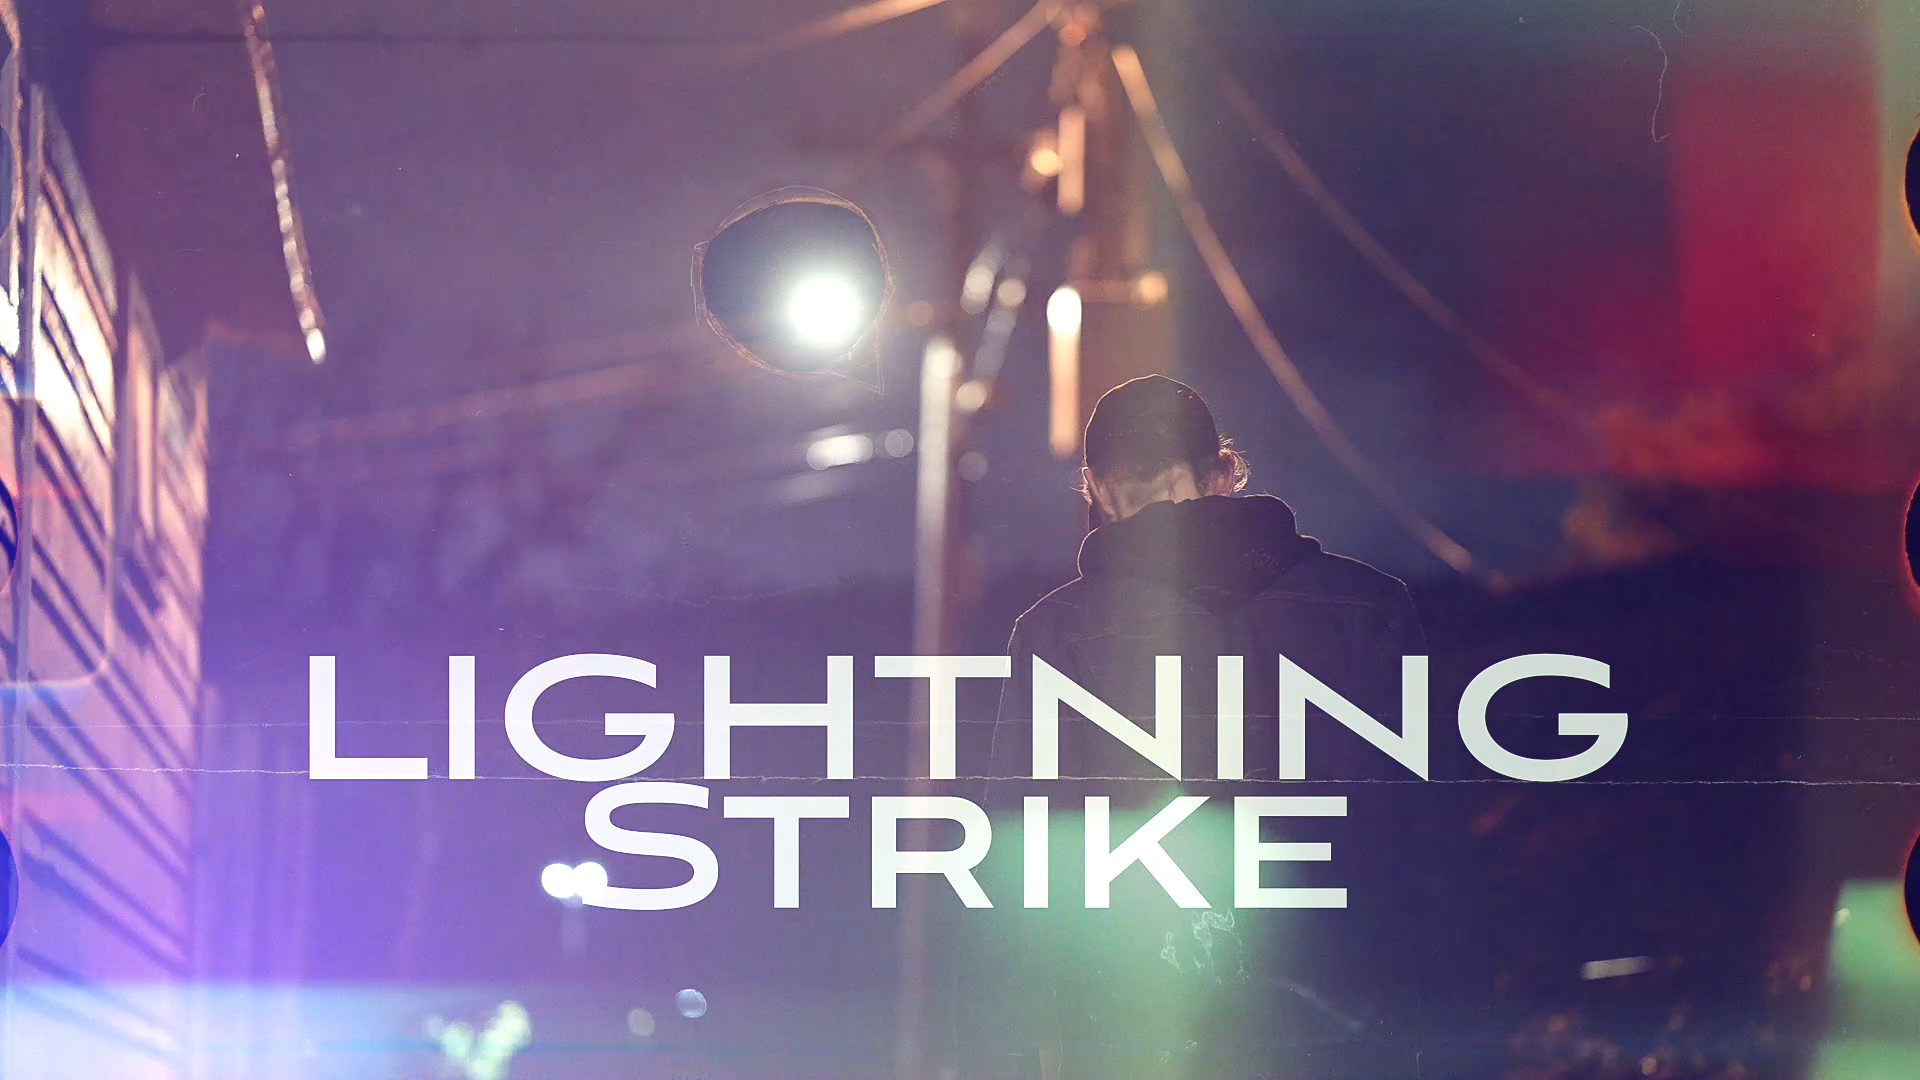 Bobby Hustle & Loud City – “Lightning Strike” (Official Video)